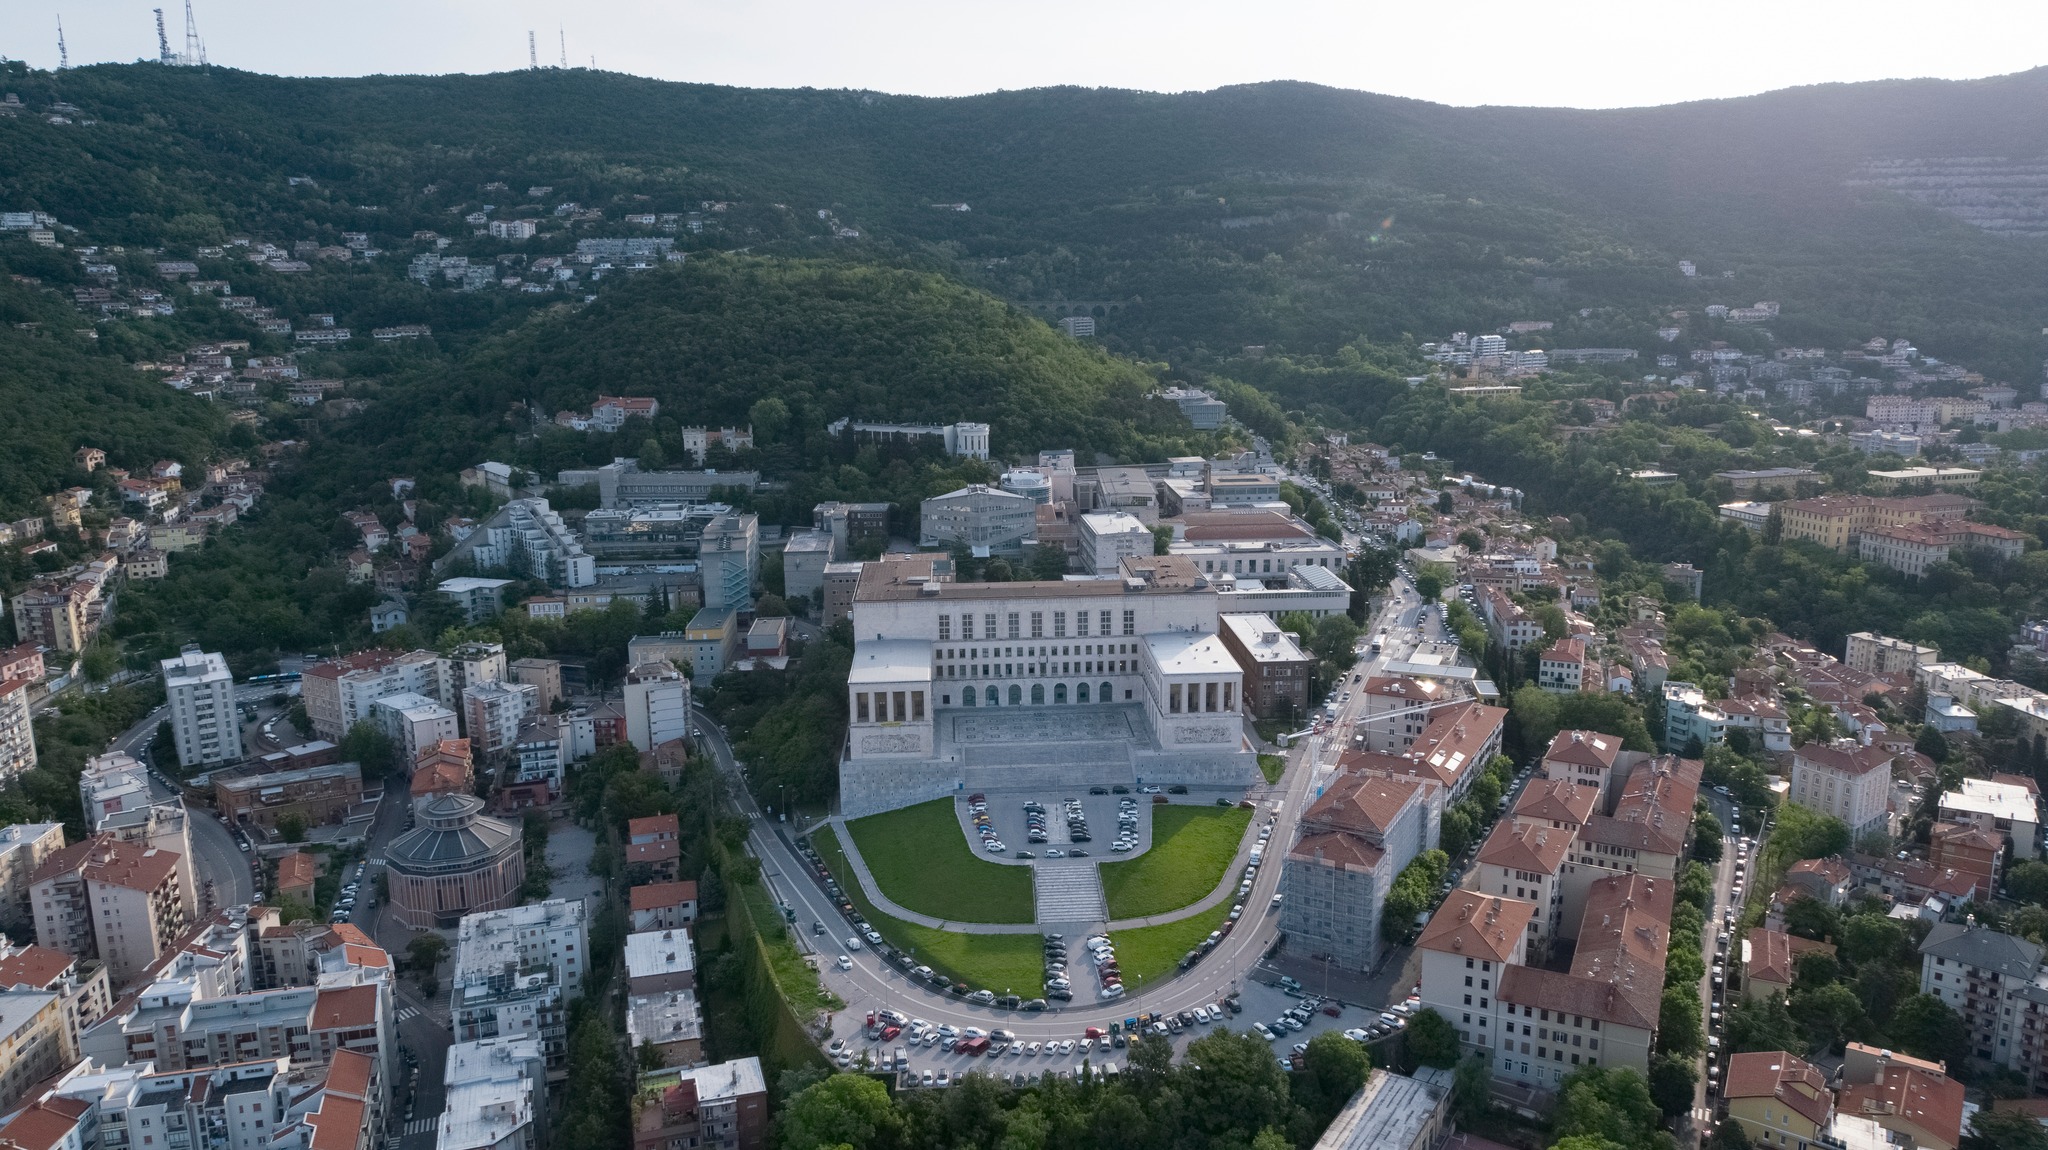 Universita degli Studi di Trieste